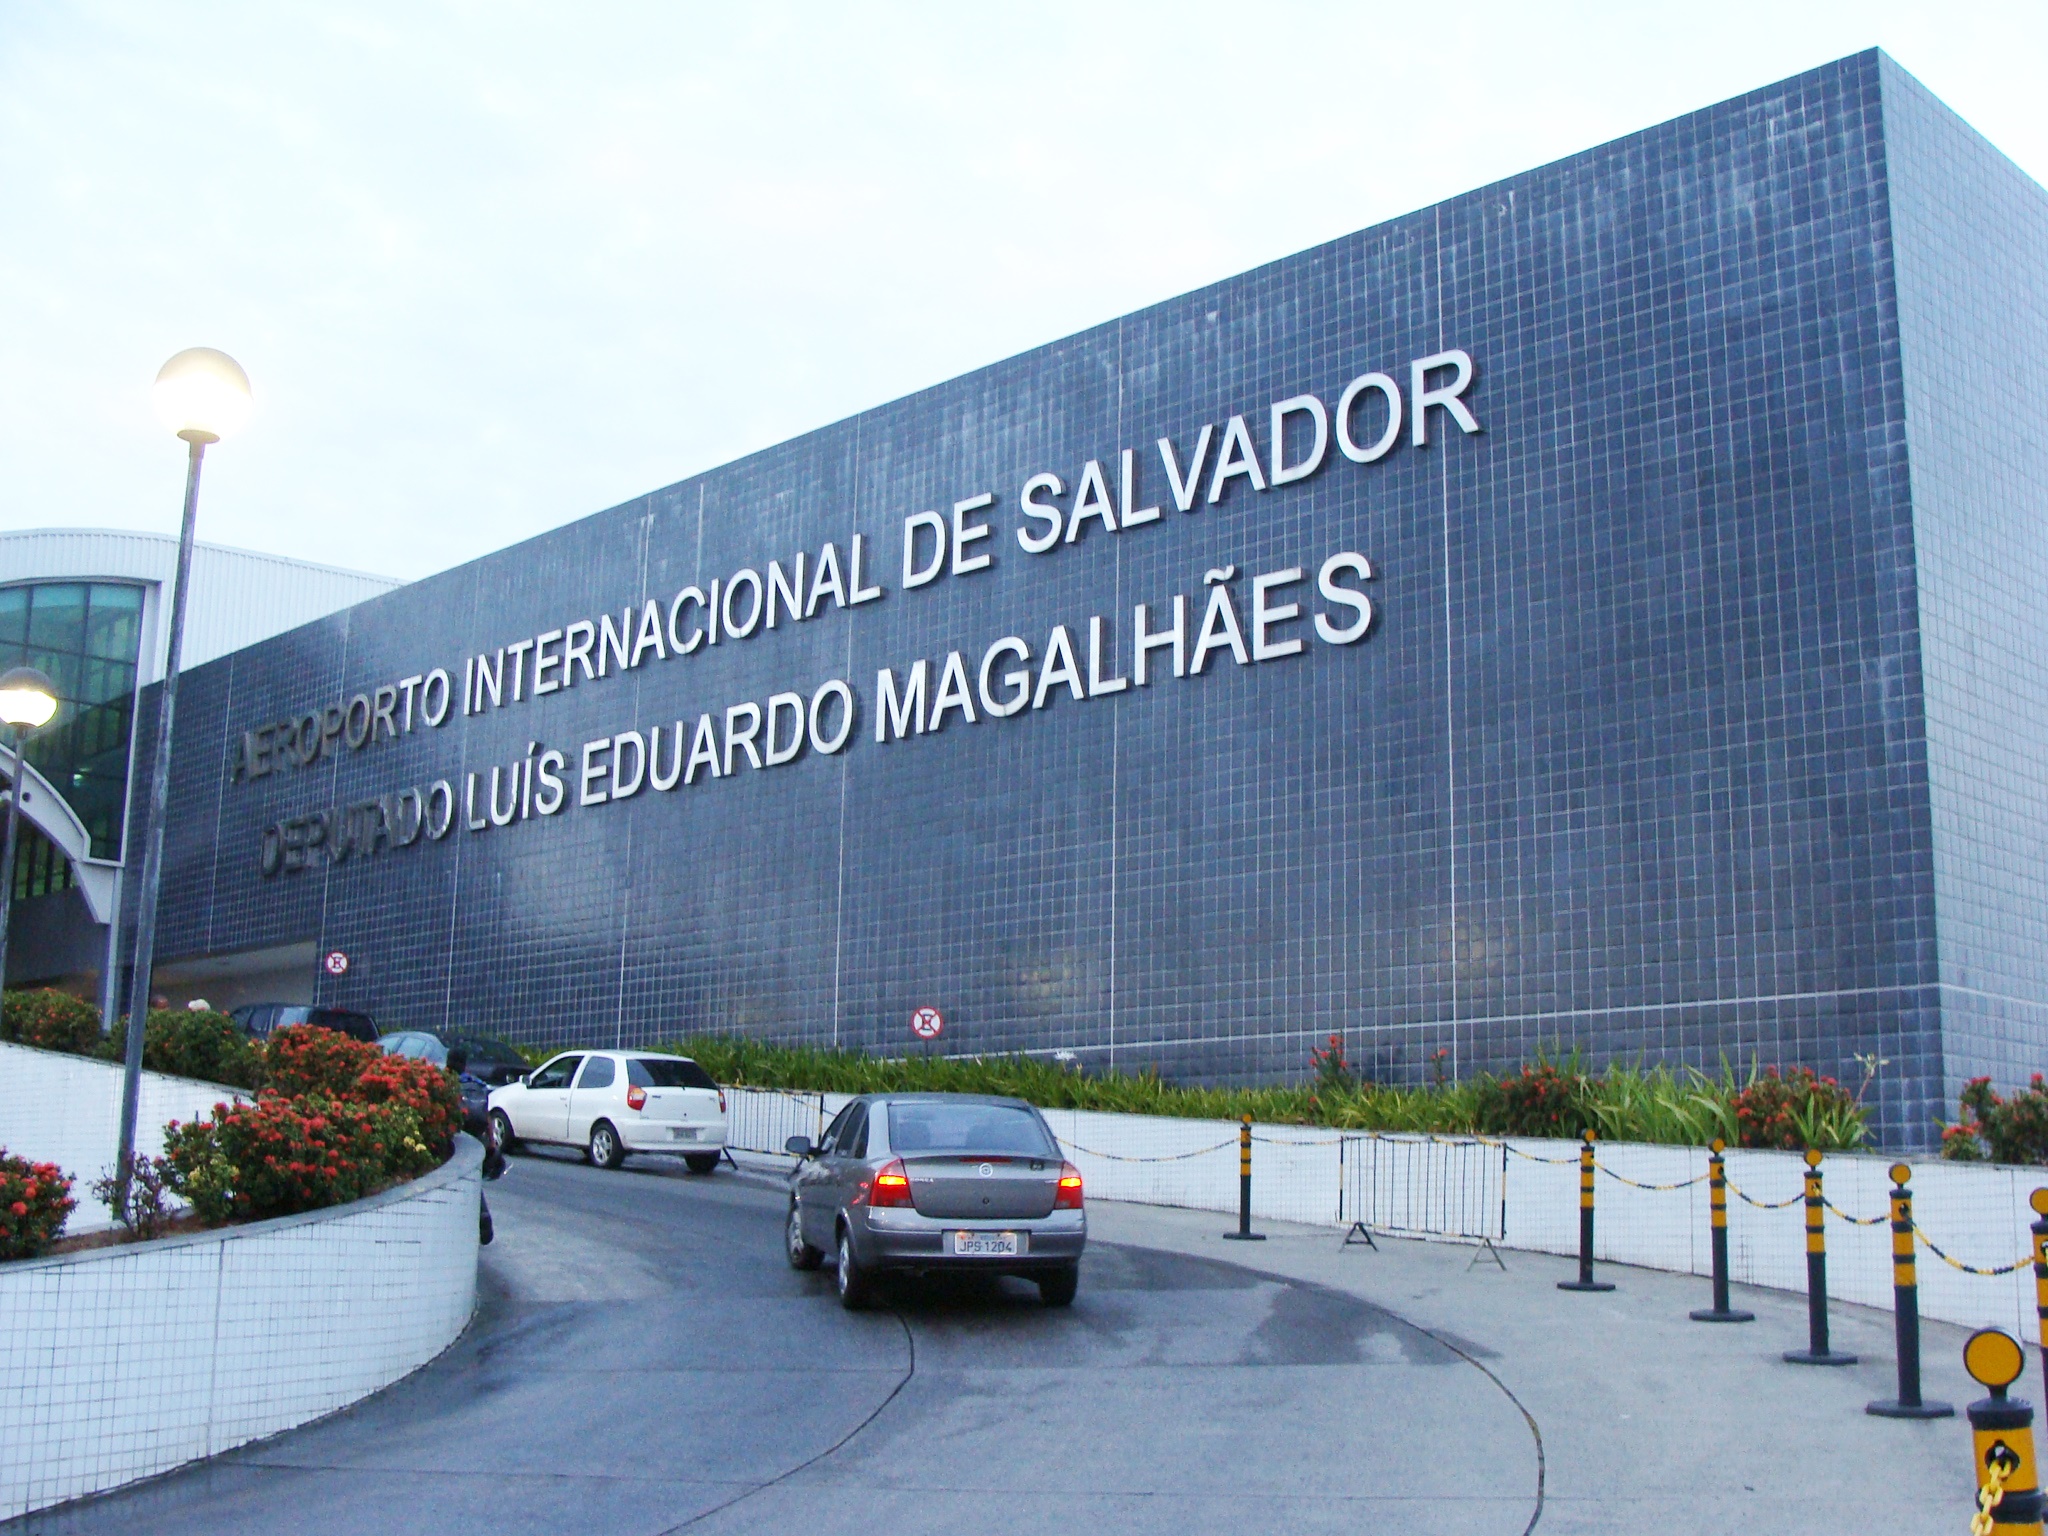 Avião faz pouso de emergência no aeroporto de Salvador após problema técnico